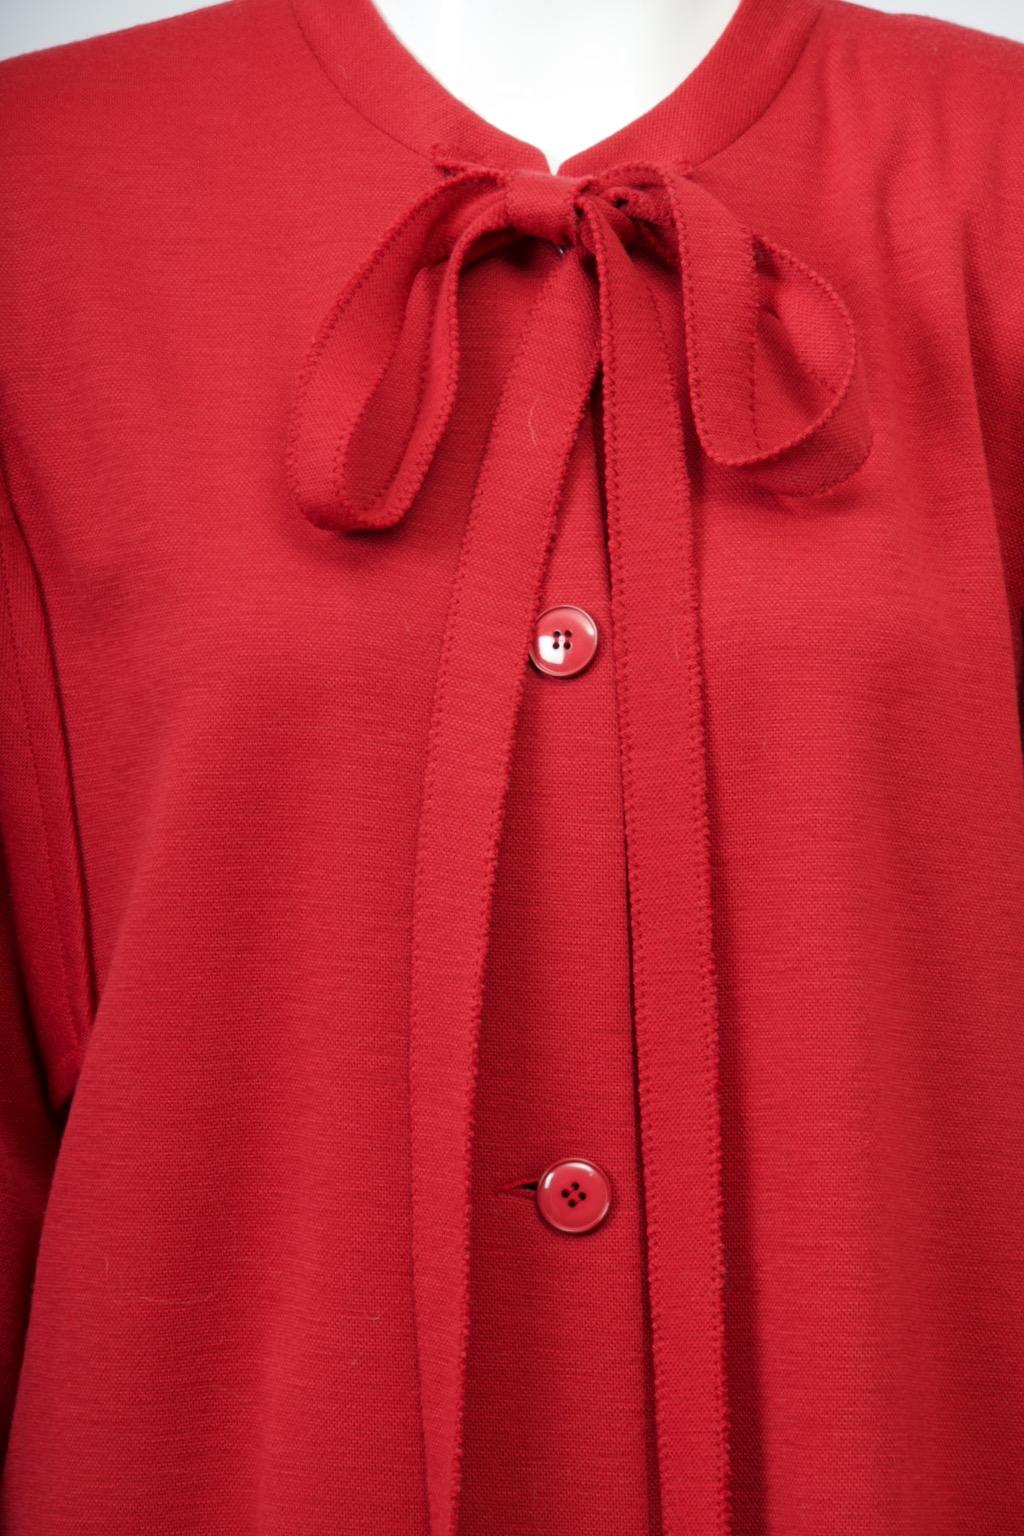 Roter Doppelstrickmantel oder -pullover von Sonia Rykiel aus den 1980er Jahren mit der für die Designerin charakteristischen Schleife im Nacken, die durch das Binden der langen Strickstreifen an der Vorderseite des Kragens erreicht wird. Das